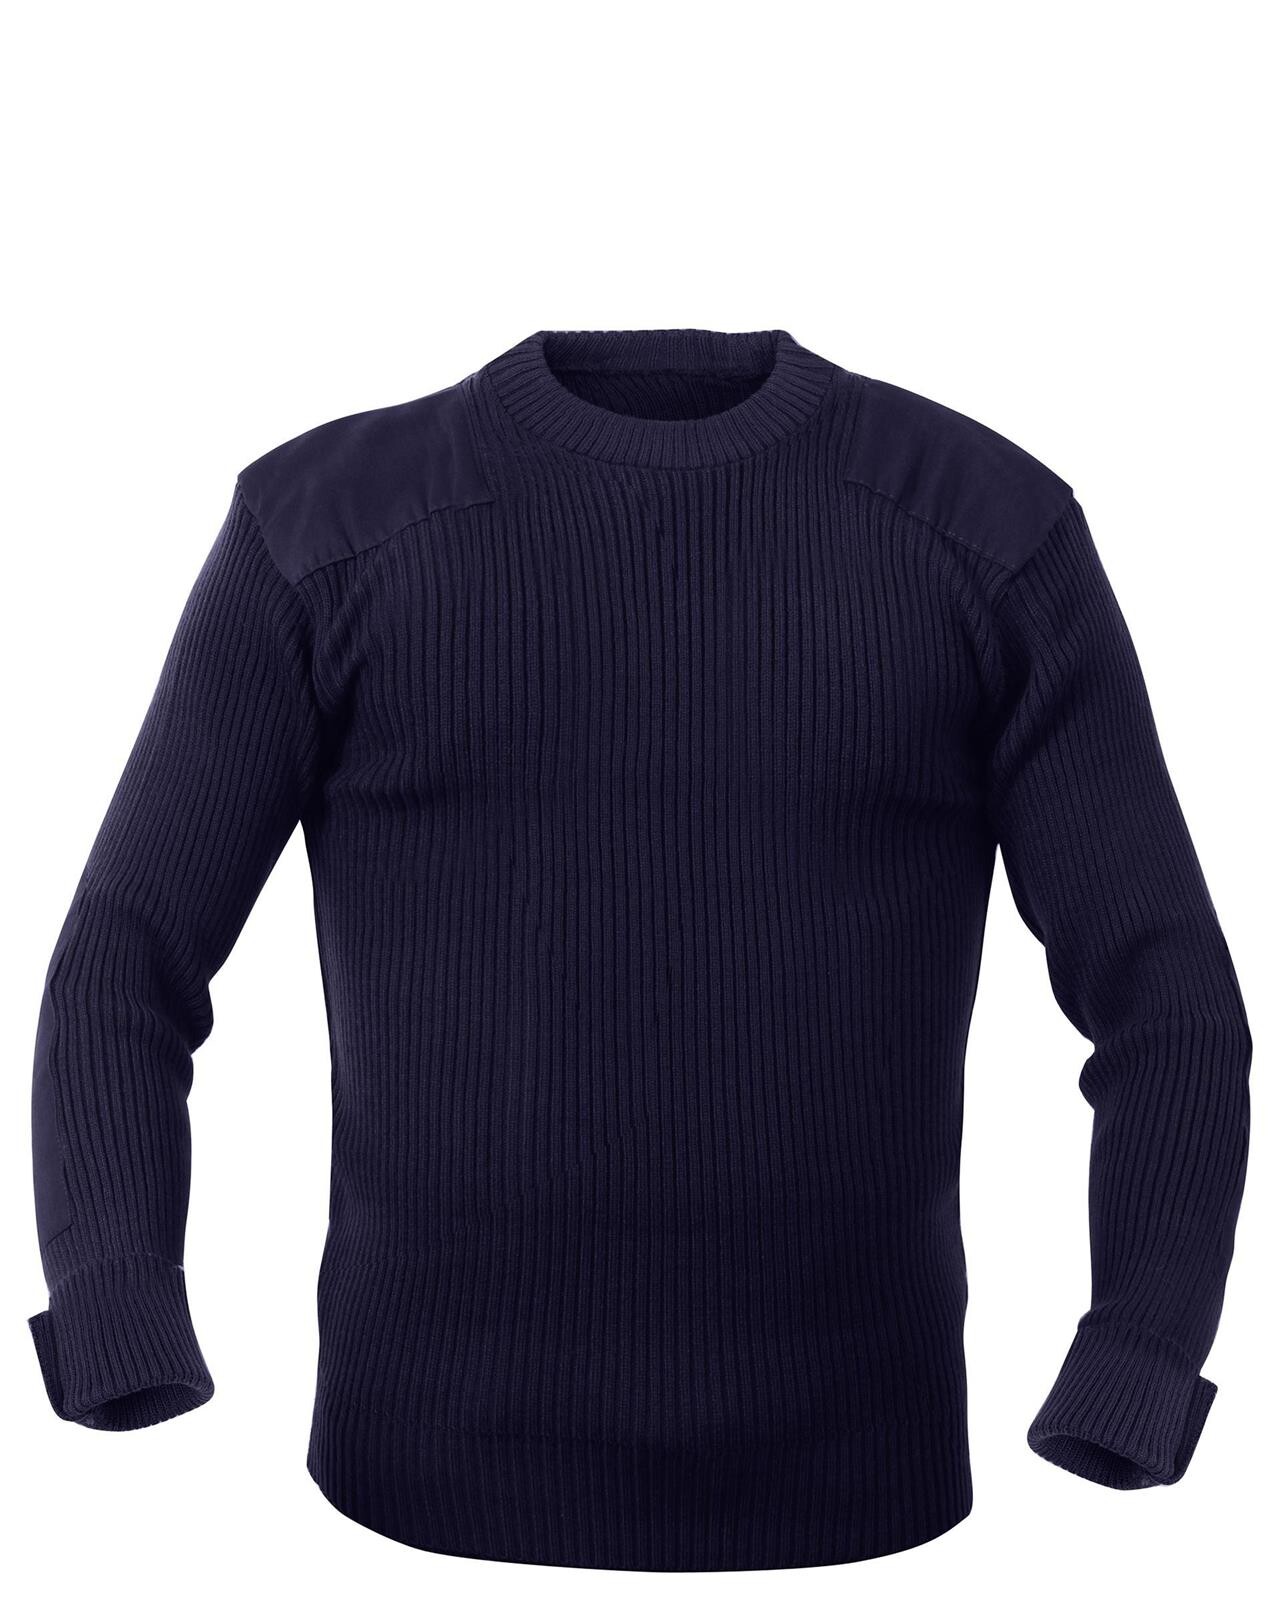 8: Rothco Commando Sweater - G.I. Style (Navy, XL)